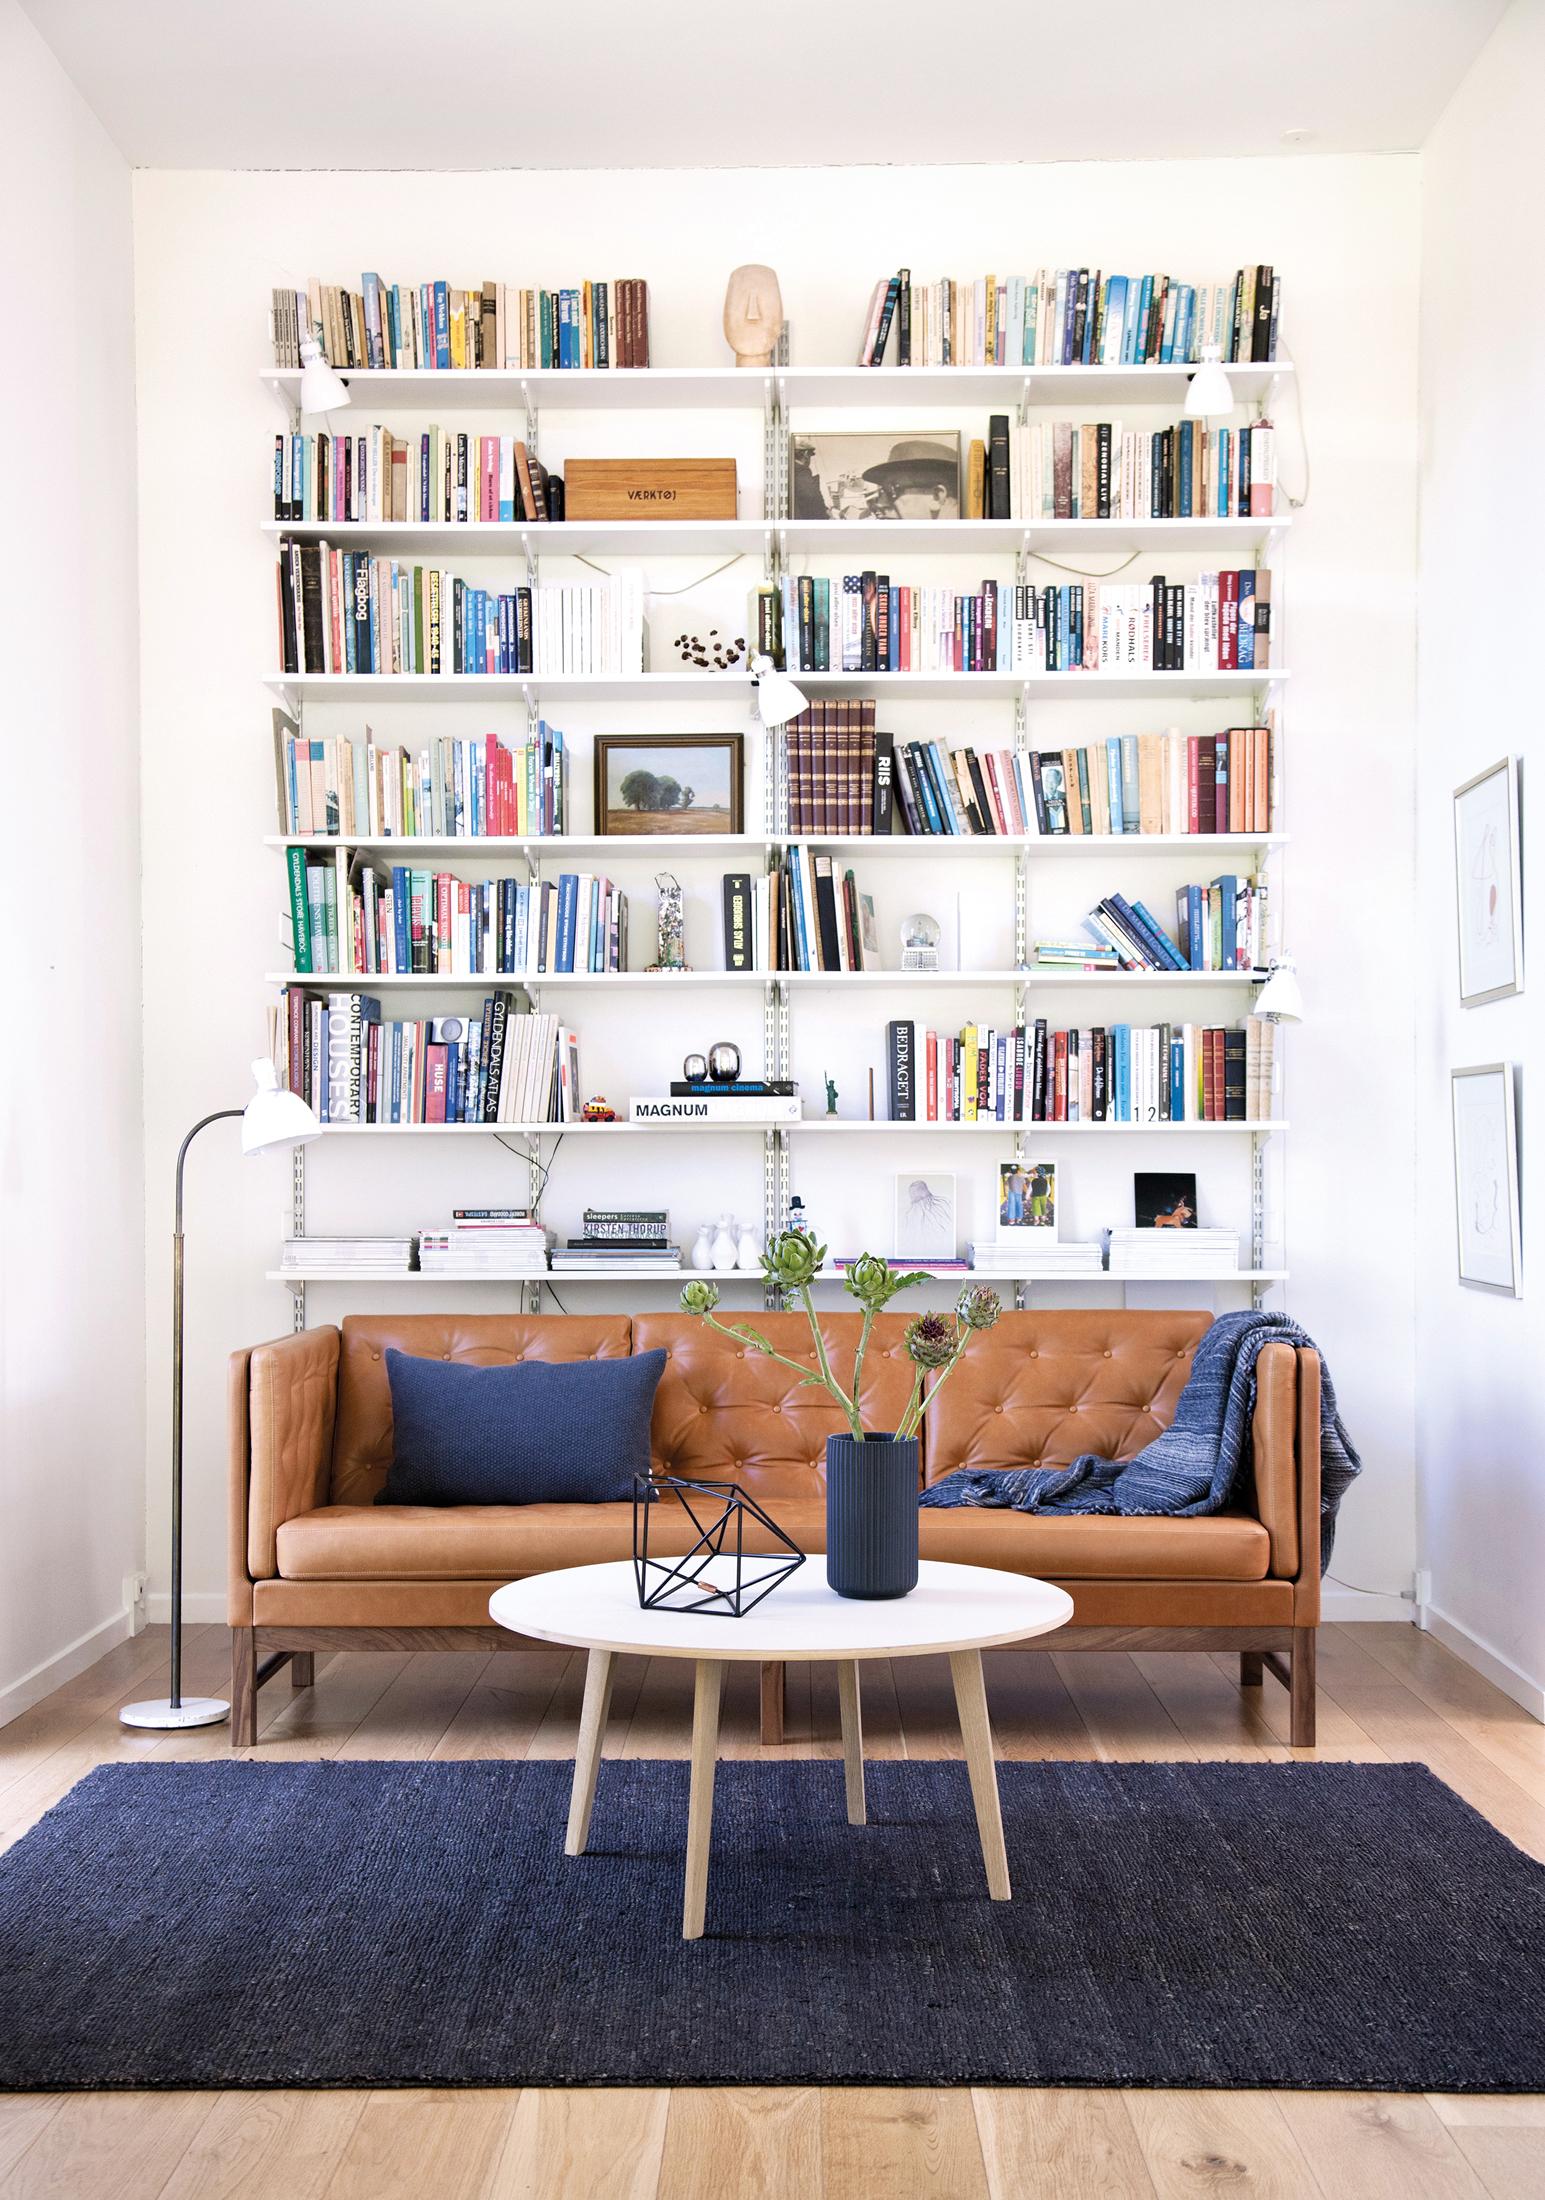 Hohes Bücherregal in elegantem Wohnzimmer #bücherregal #wohnzimmer #braunessofa ©Erik Jørgensen